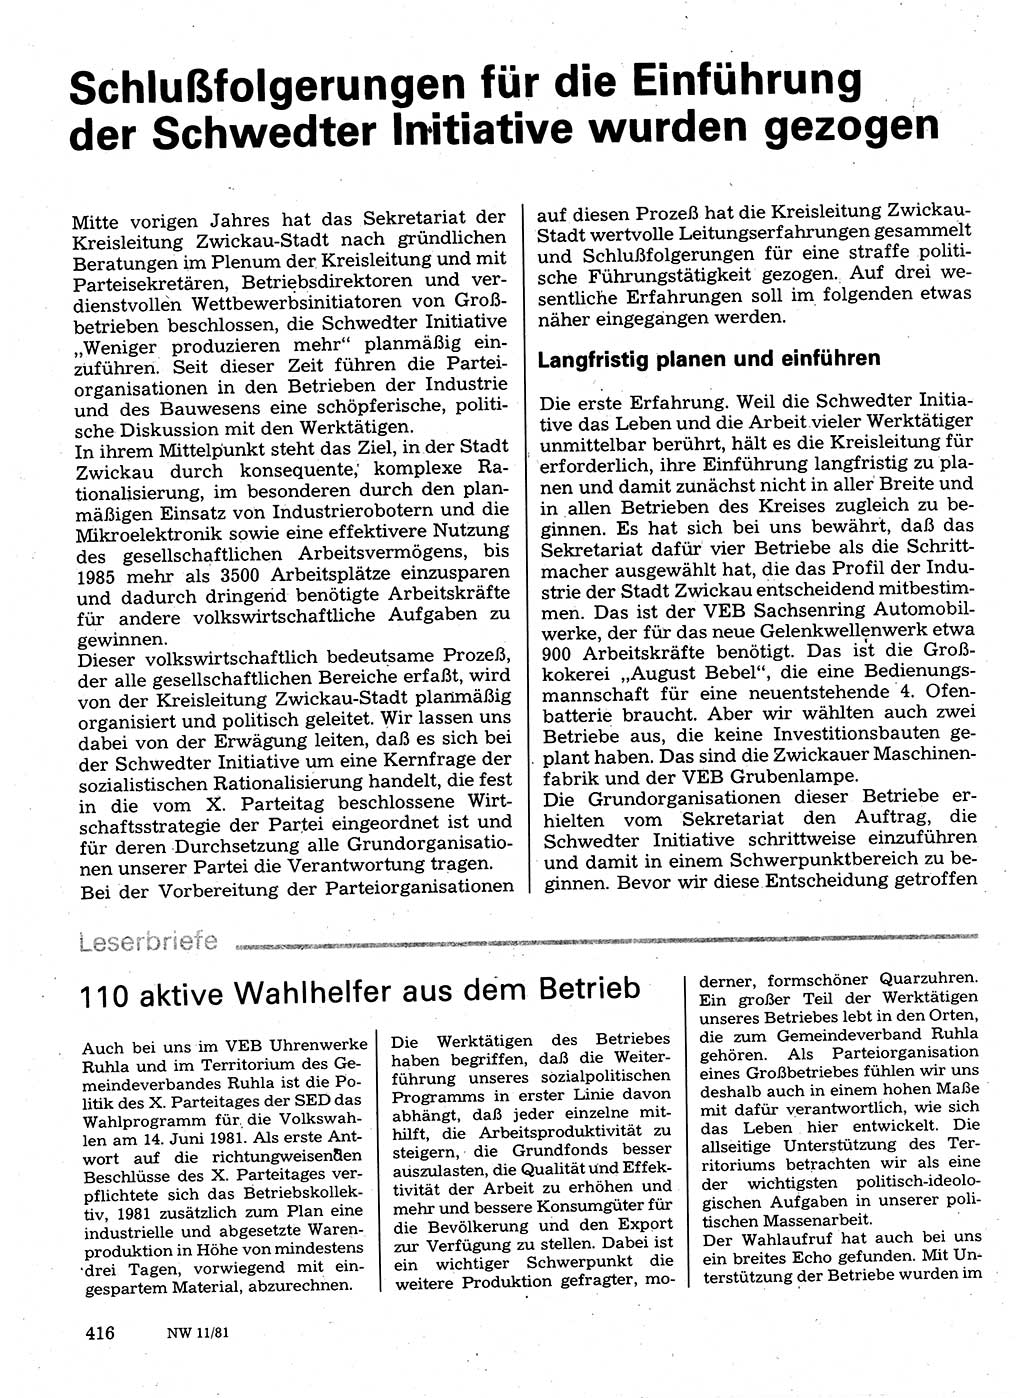 Neuer Weg (NW), Organ des Zentralkomitees (ZK) der SED (Sozialistische Einheitspartei Deutschlands) für Fragen des Parteilebens, 36. Jahrgang [Deutsche Demokratische Republik (DDR)] 1981, Seite 416 (NW ZK SED DDR 1981, S. 416)